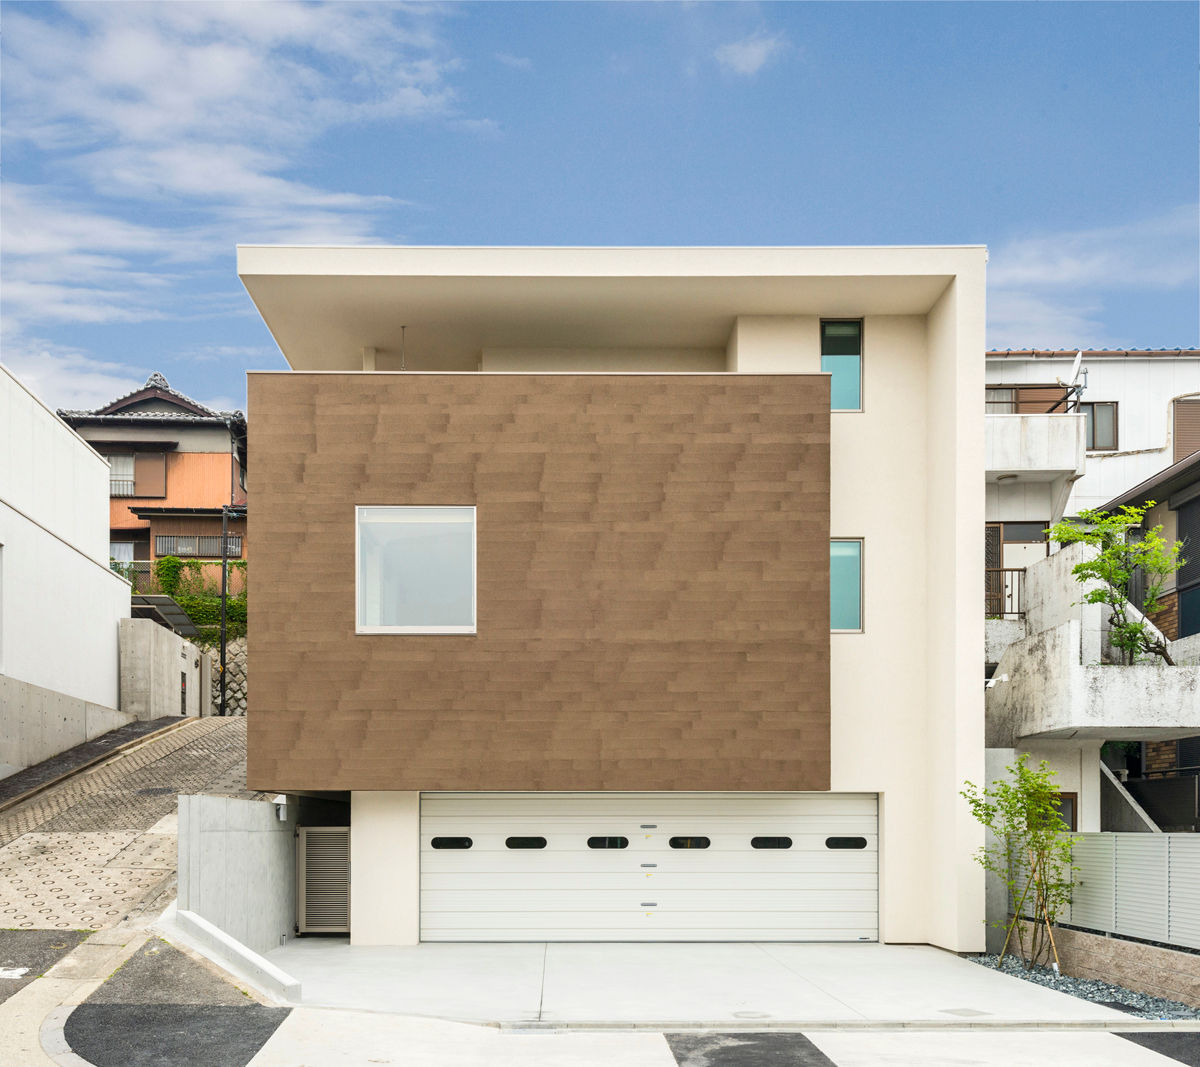 傾斜地に建つ家, Egawa Architectural Studio Egawa Architectural Studio Eclectic style houses